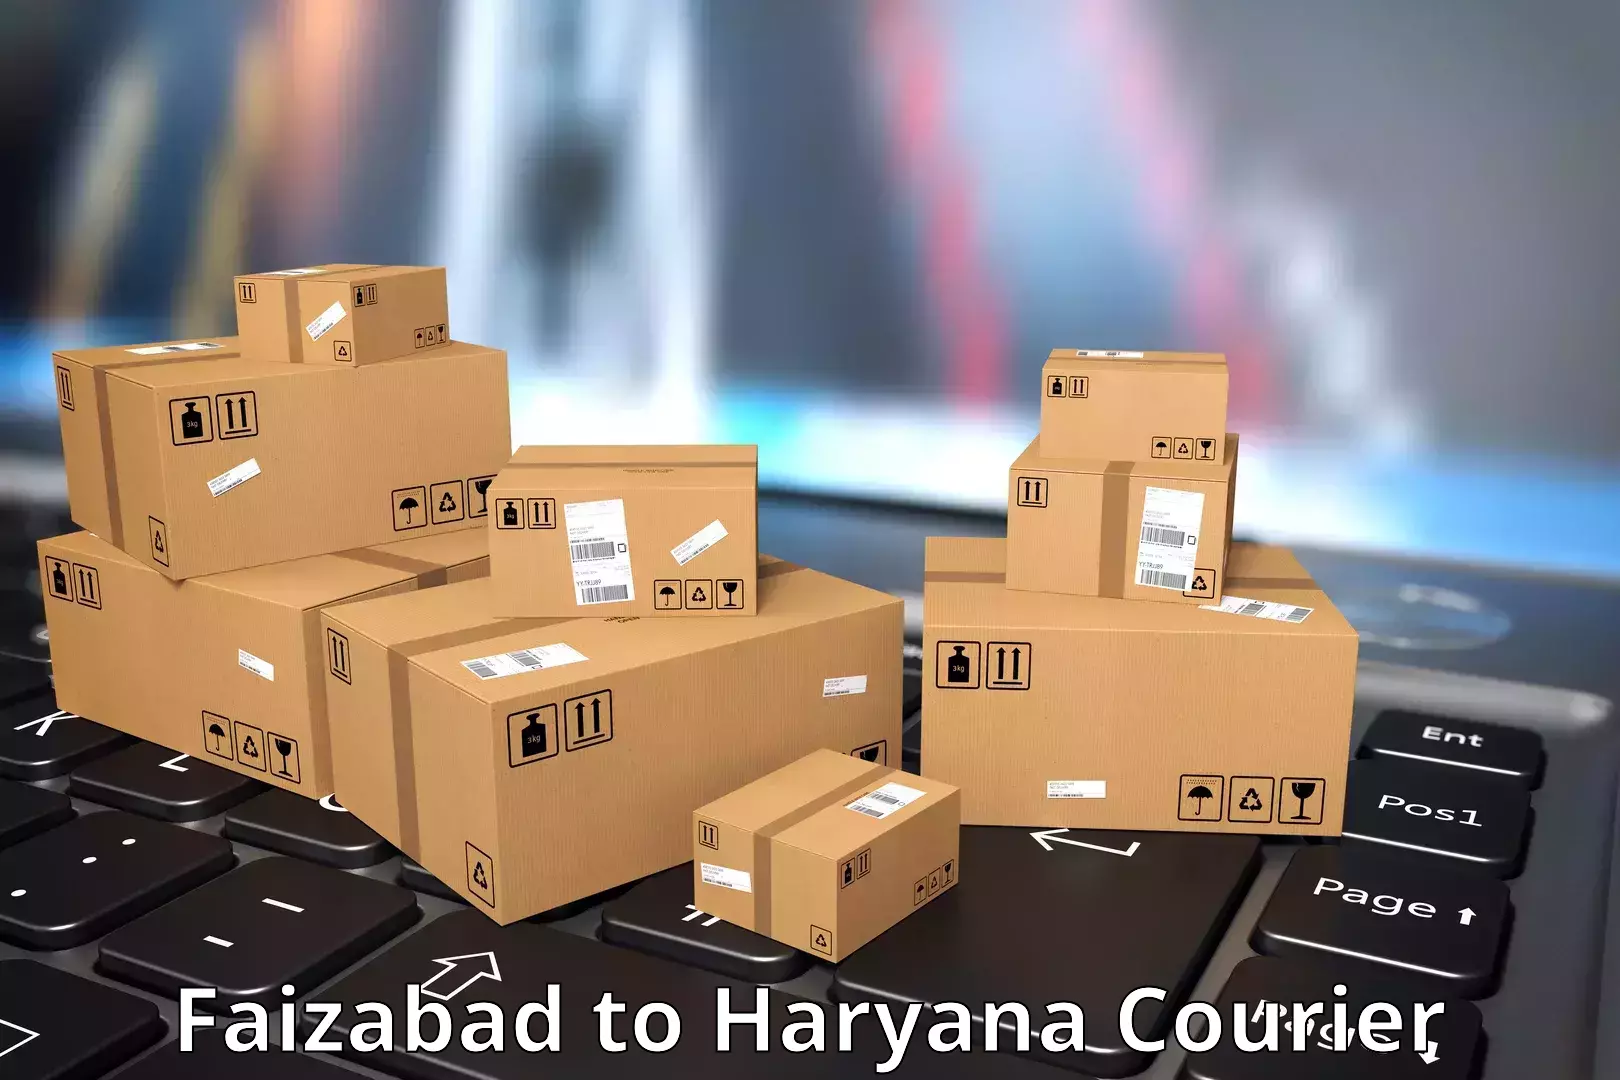 Express shipping in Faizabad to Chaudhary Charan Singh Haryana Agricultural University Hisar